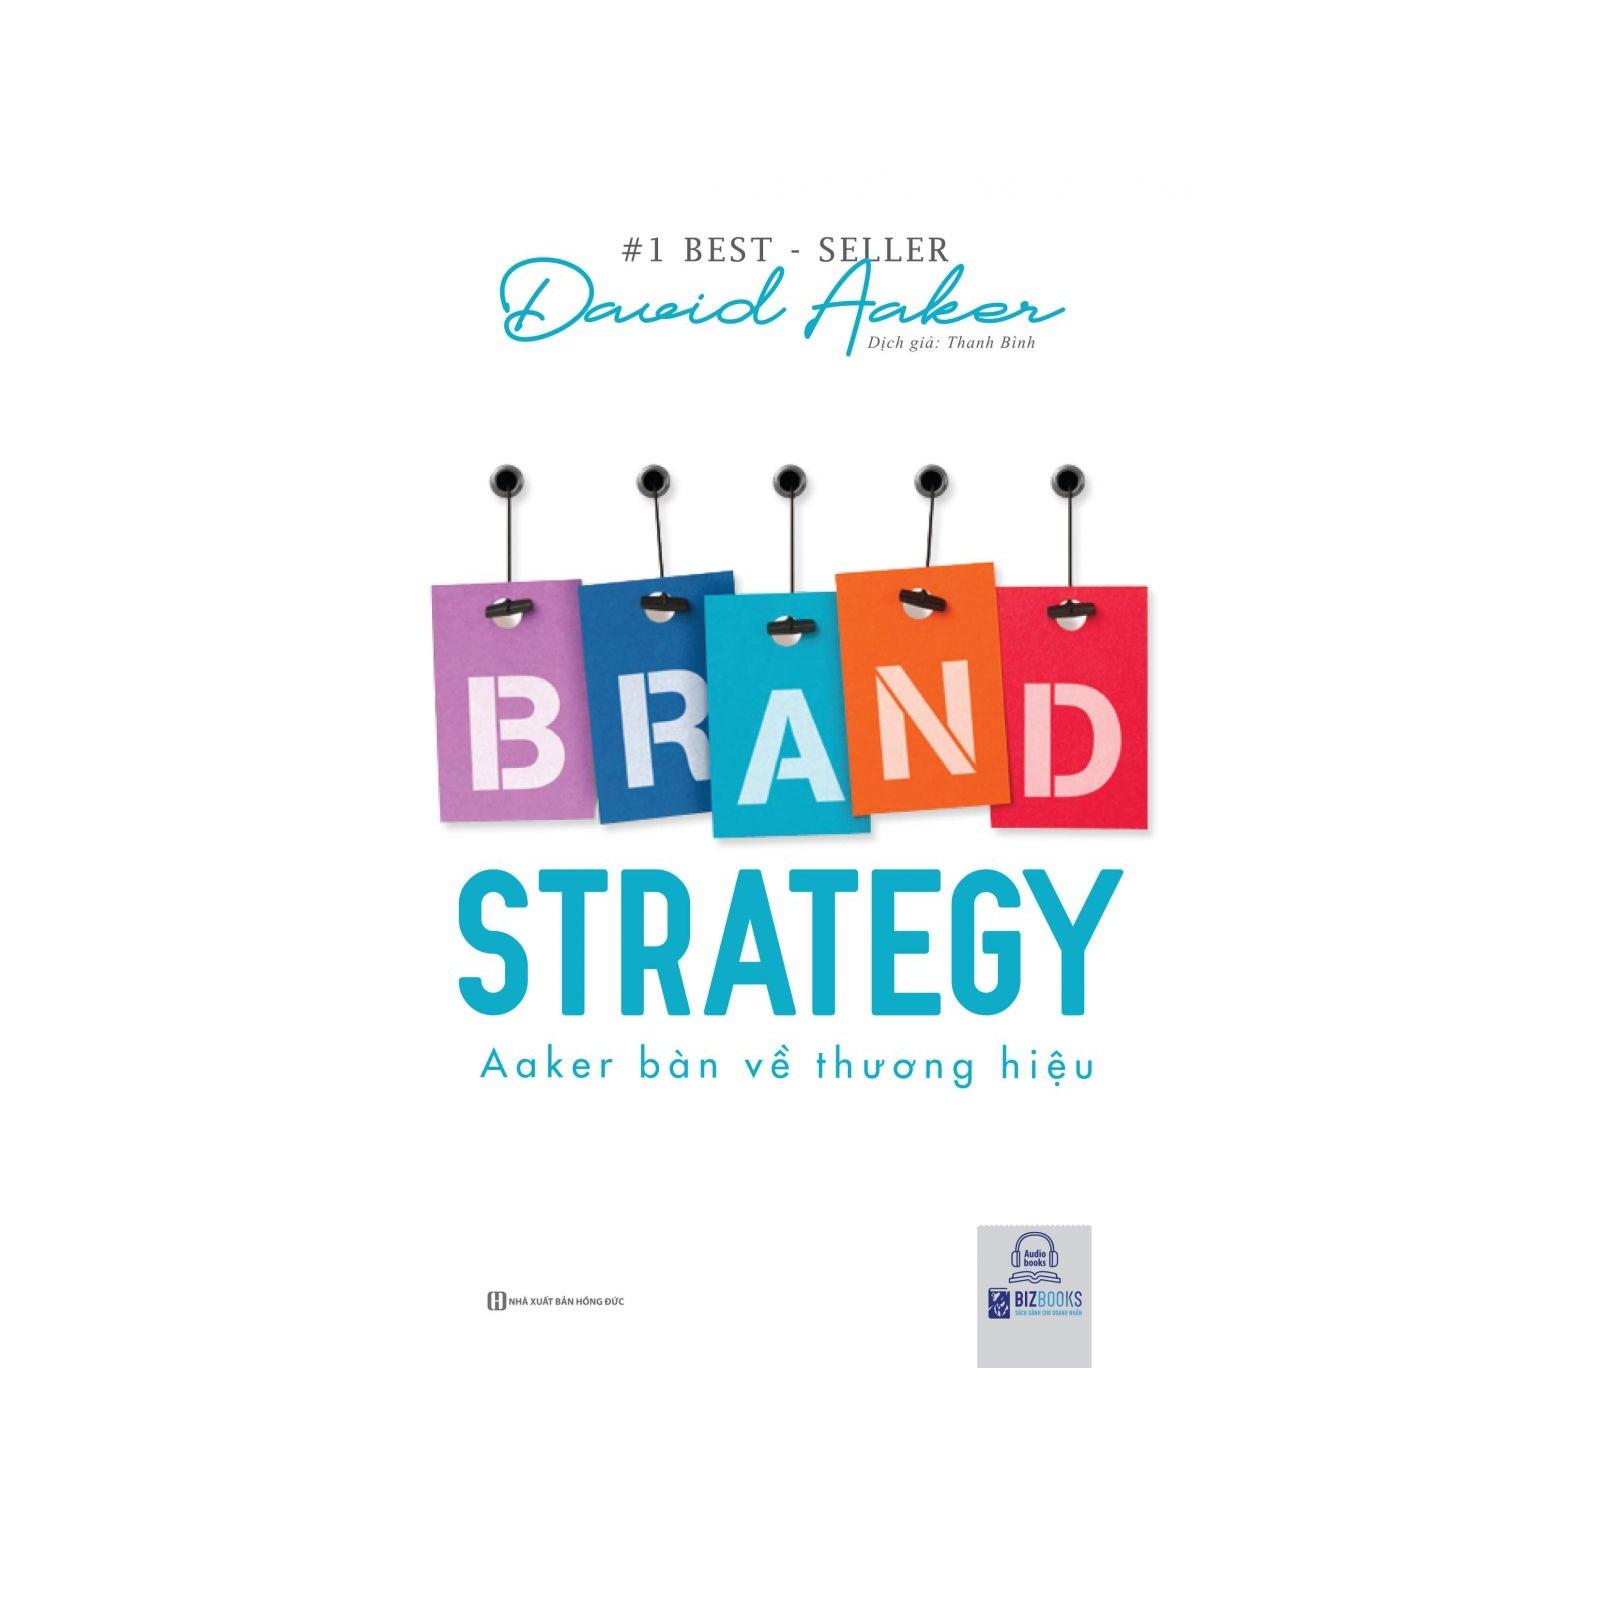 Brand Strategy: Aaker bàn về thương hiệu